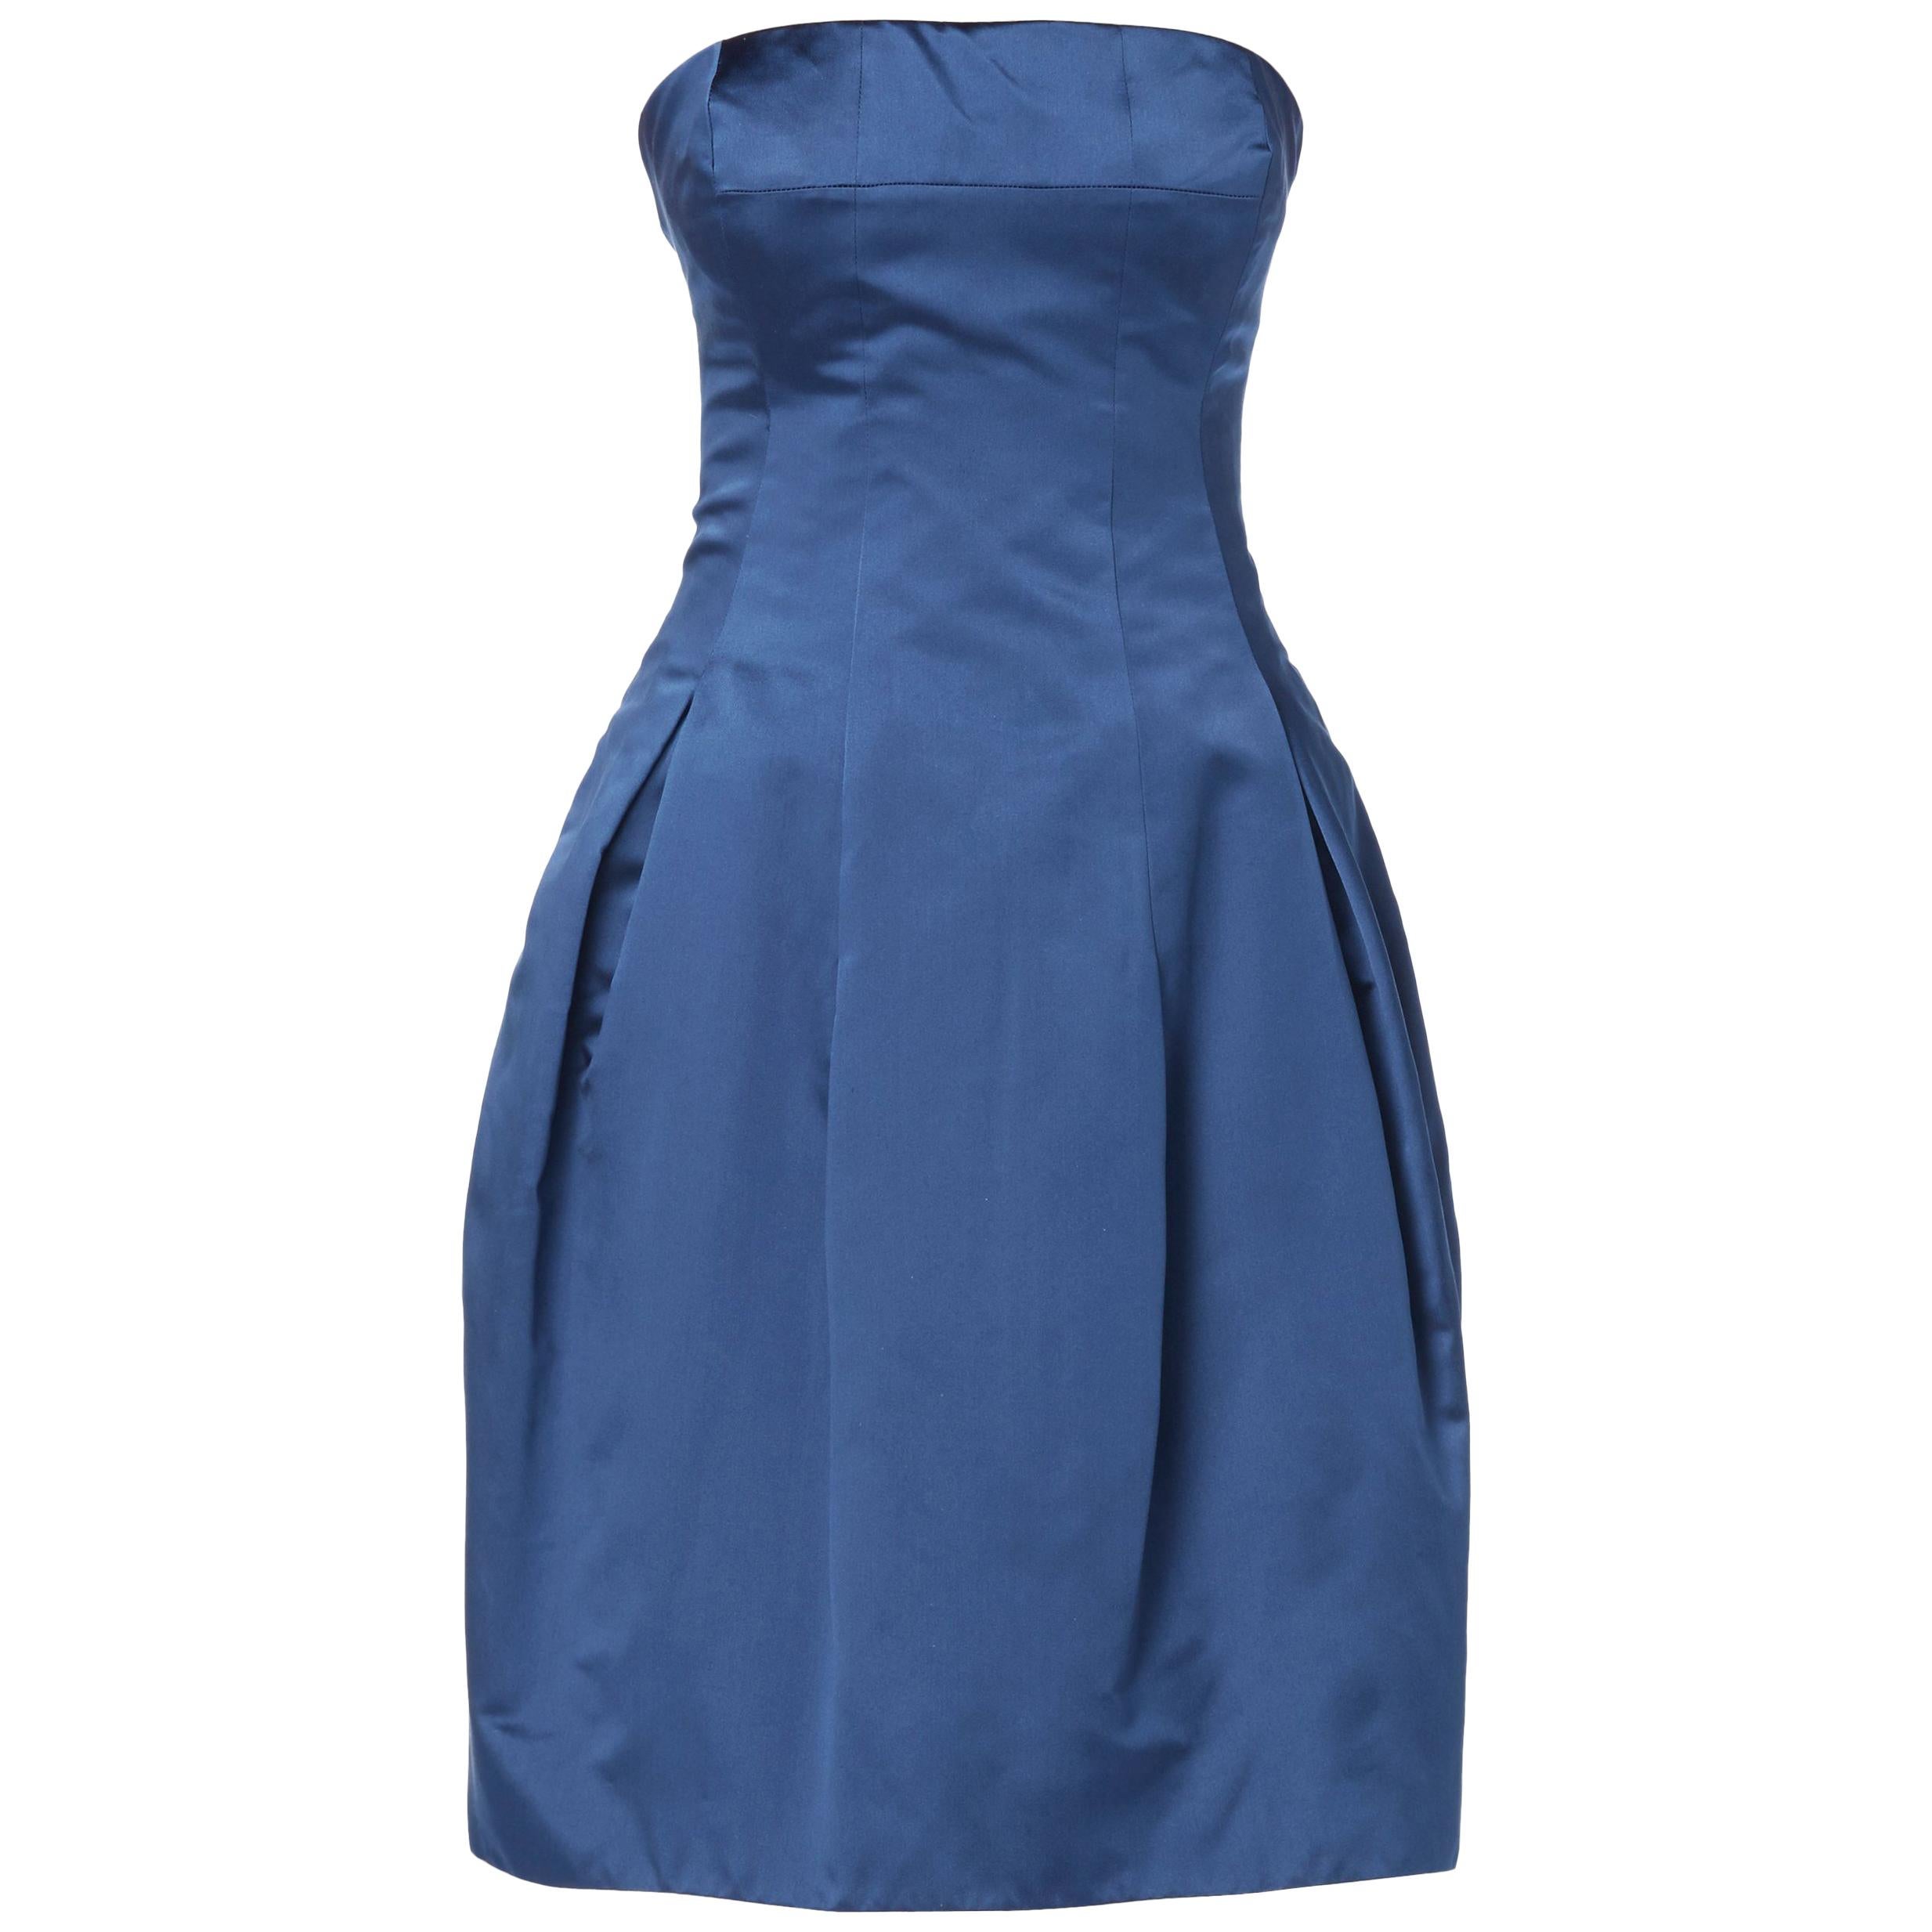 Alexander McQueen, Blue dress, Autumn/Winter 2008 For Sale